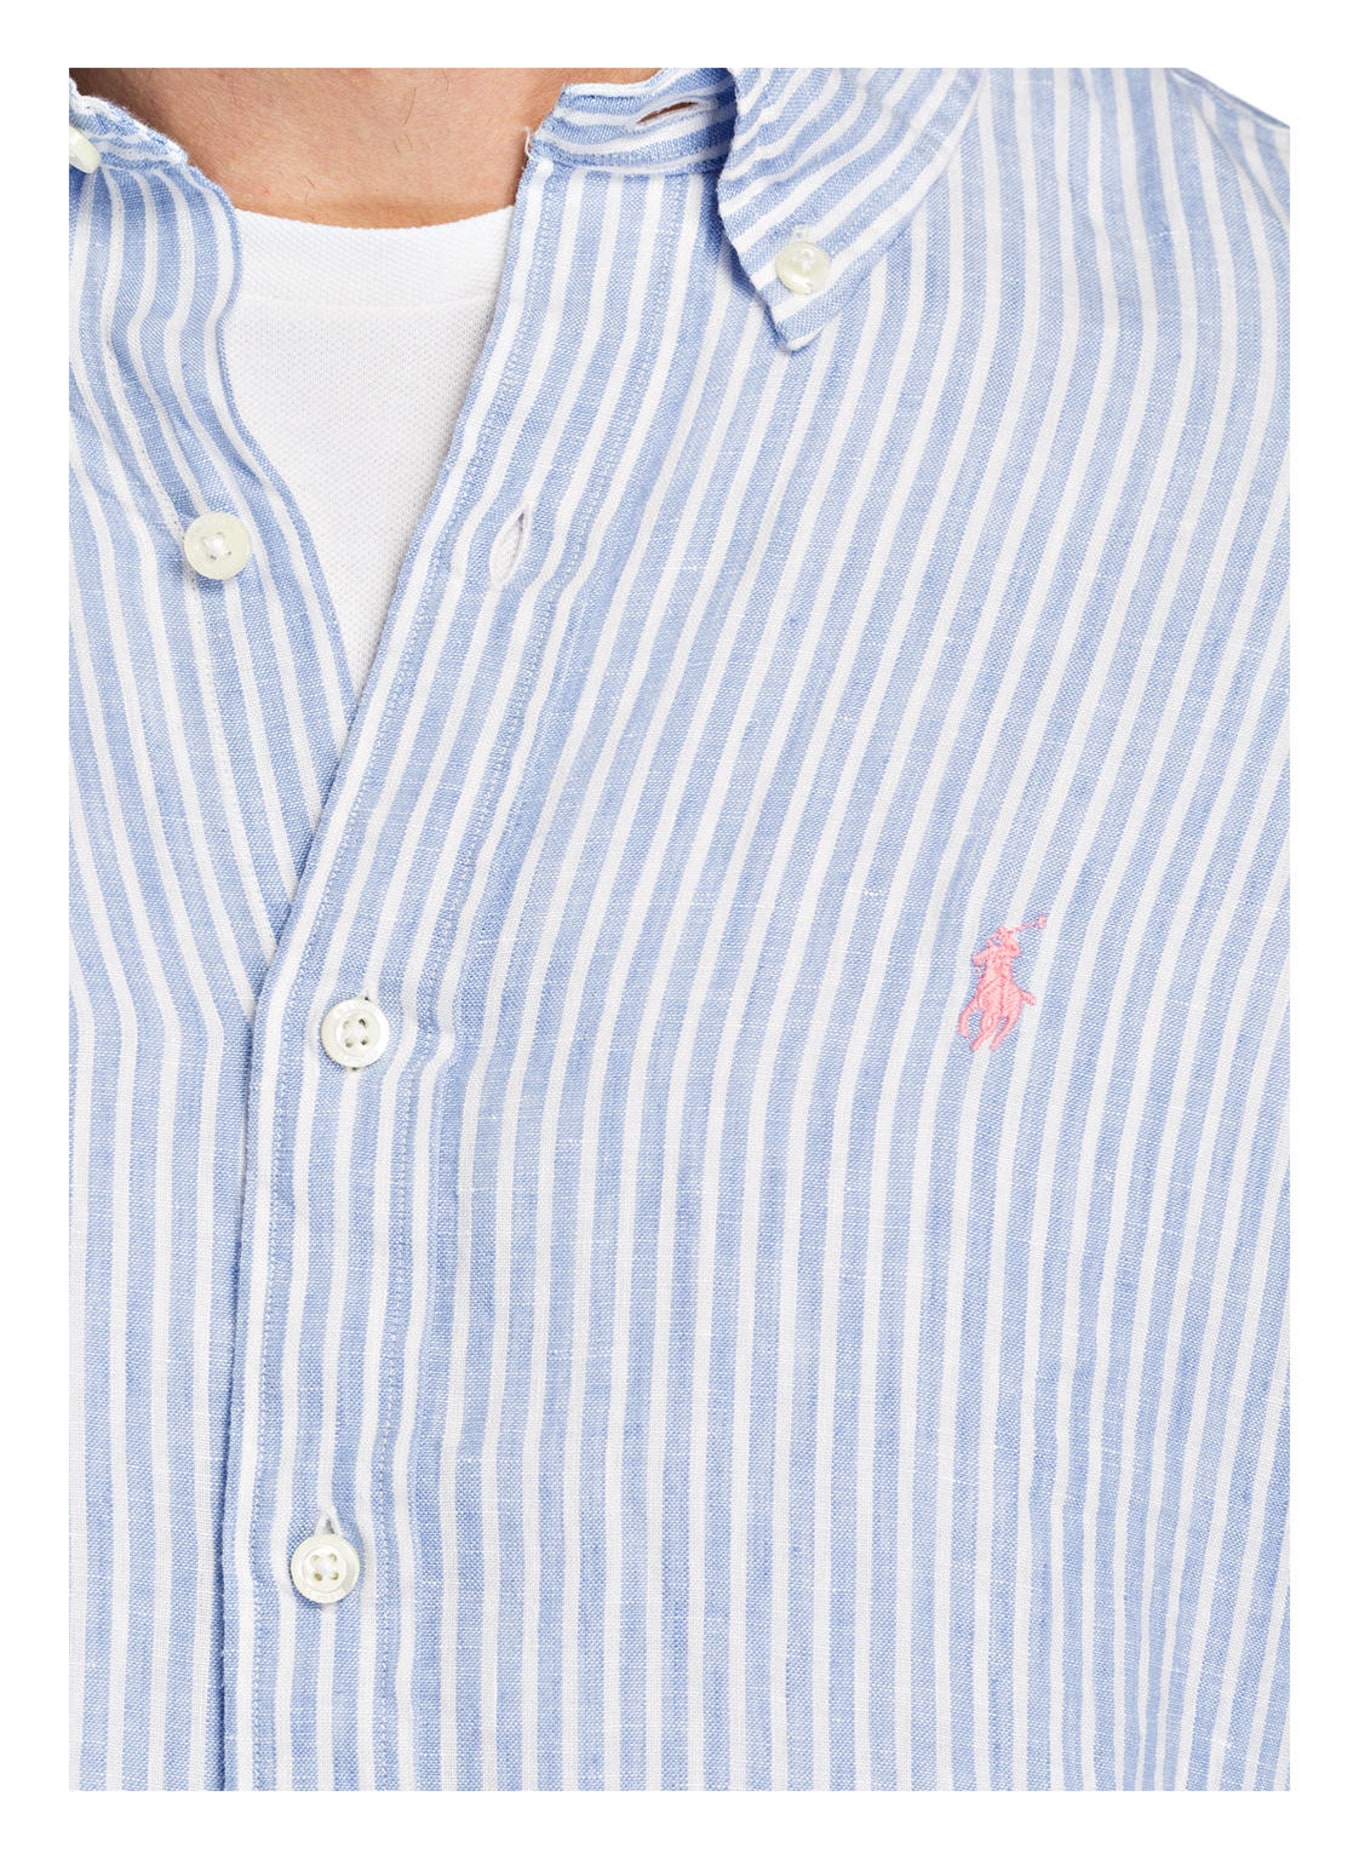 POLO RALPH LAUREN Linen shirt classic fit, Color: LIGHT BLUE/ WHITE (Image 4)